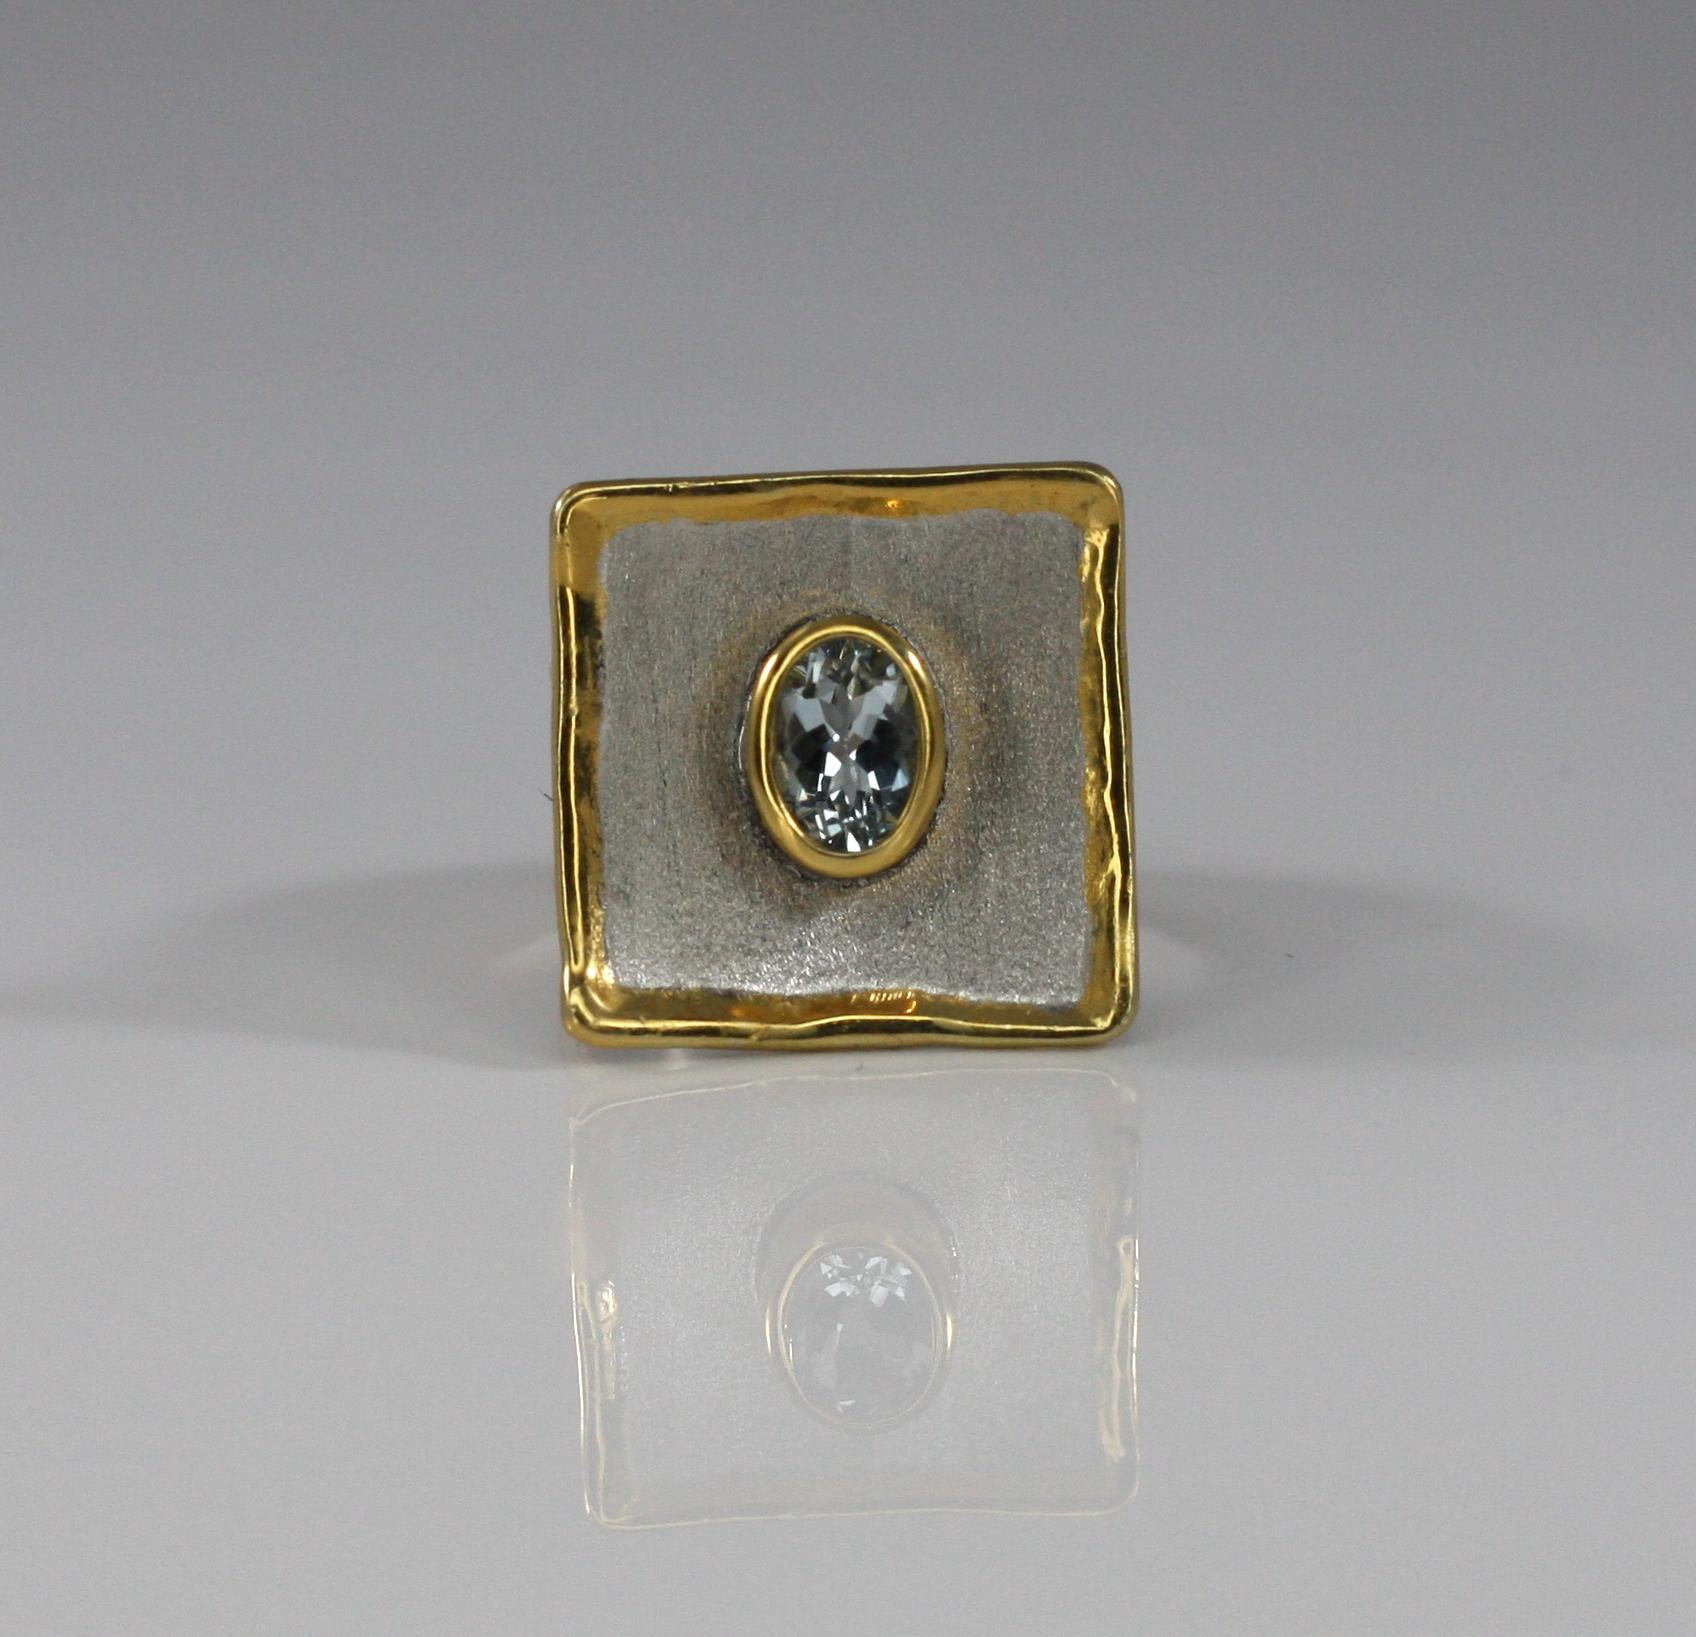 Der handgefertigte Ring von Yianni Creations ist aus feinem 950er Silber gefertigt und mit Palladium beschichtet, um den Elementen zu widerstehen. Dieser wunderschöne quadratische Ring aus der Midas Collection ist an den Rändern mit einer dicken 24